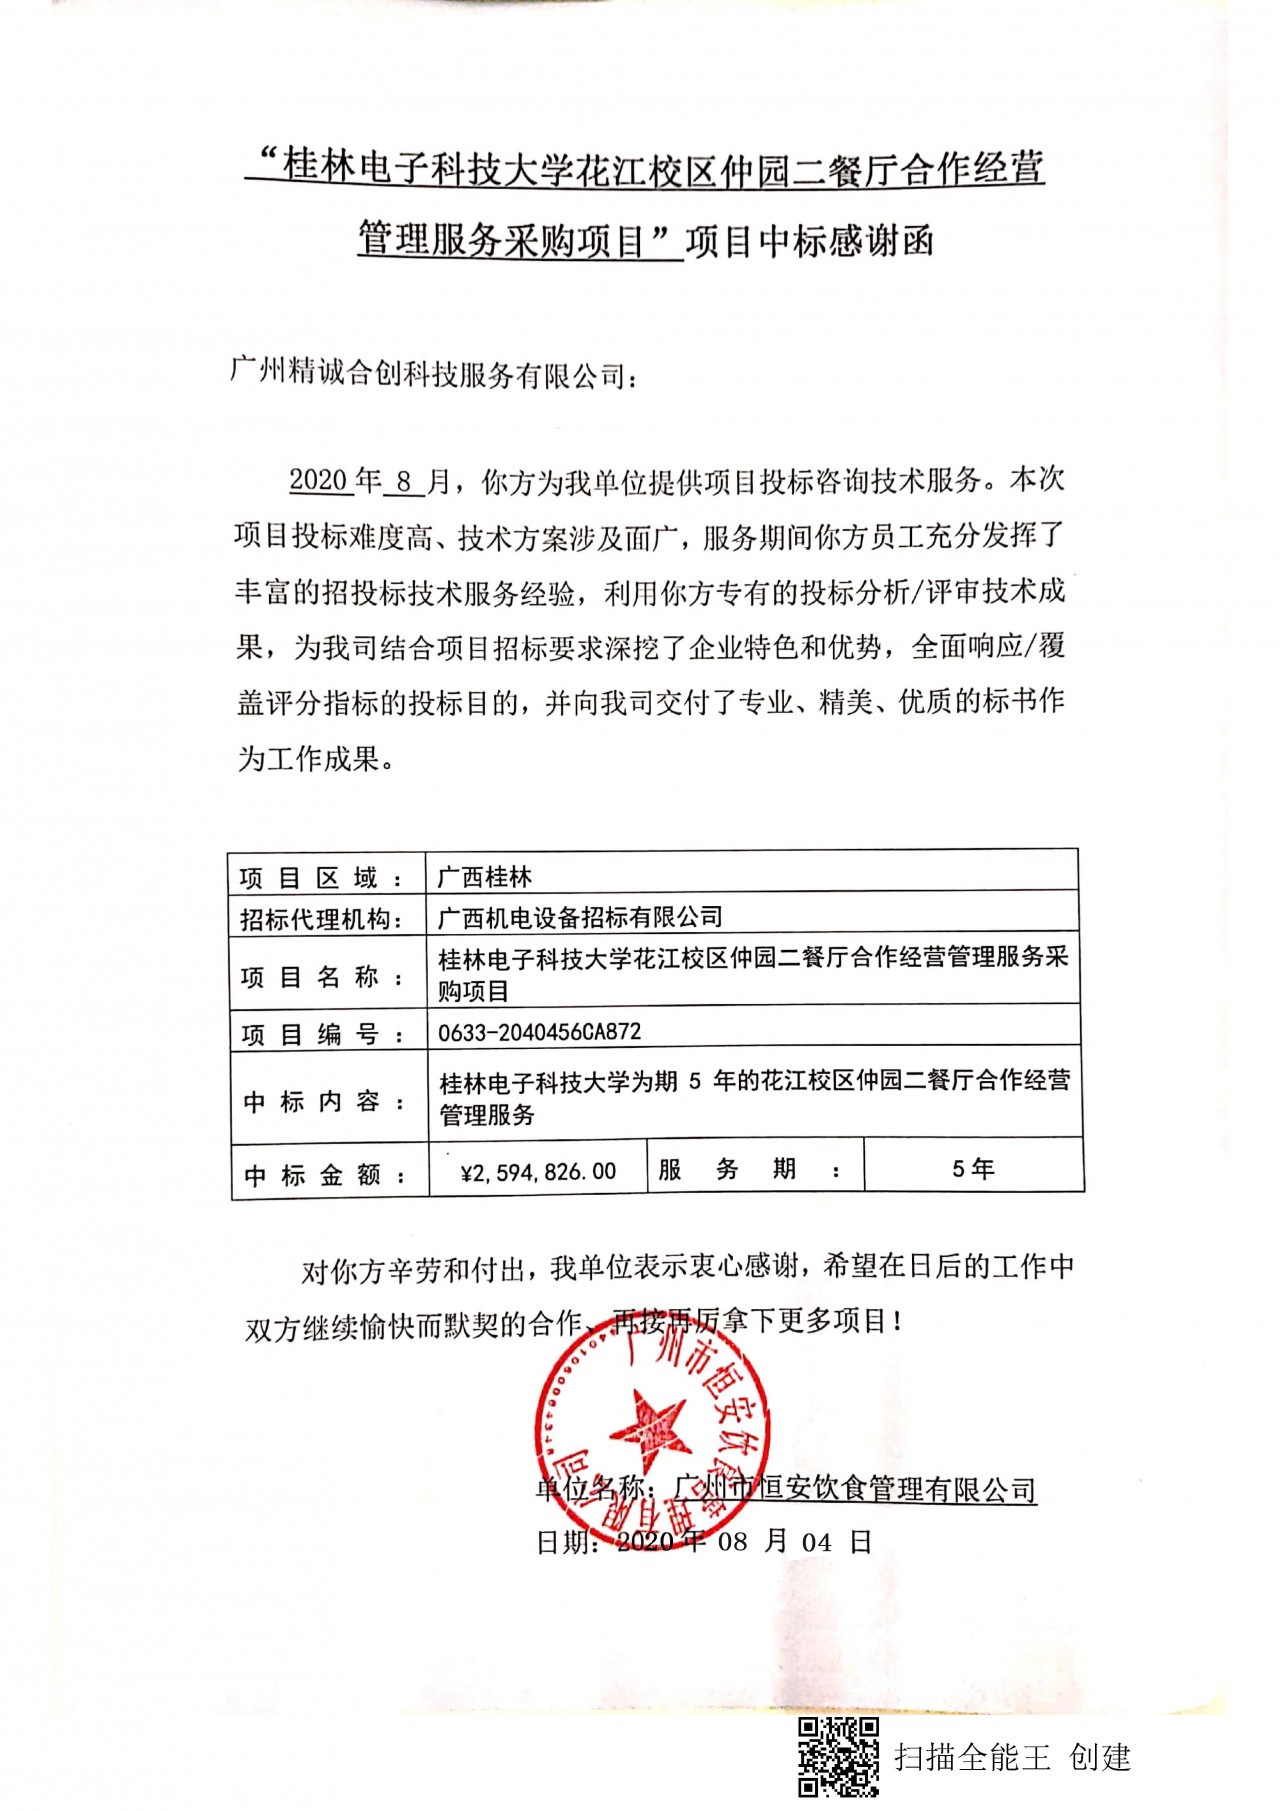 桂林电子科技大学 2020-08-20 09.jpg